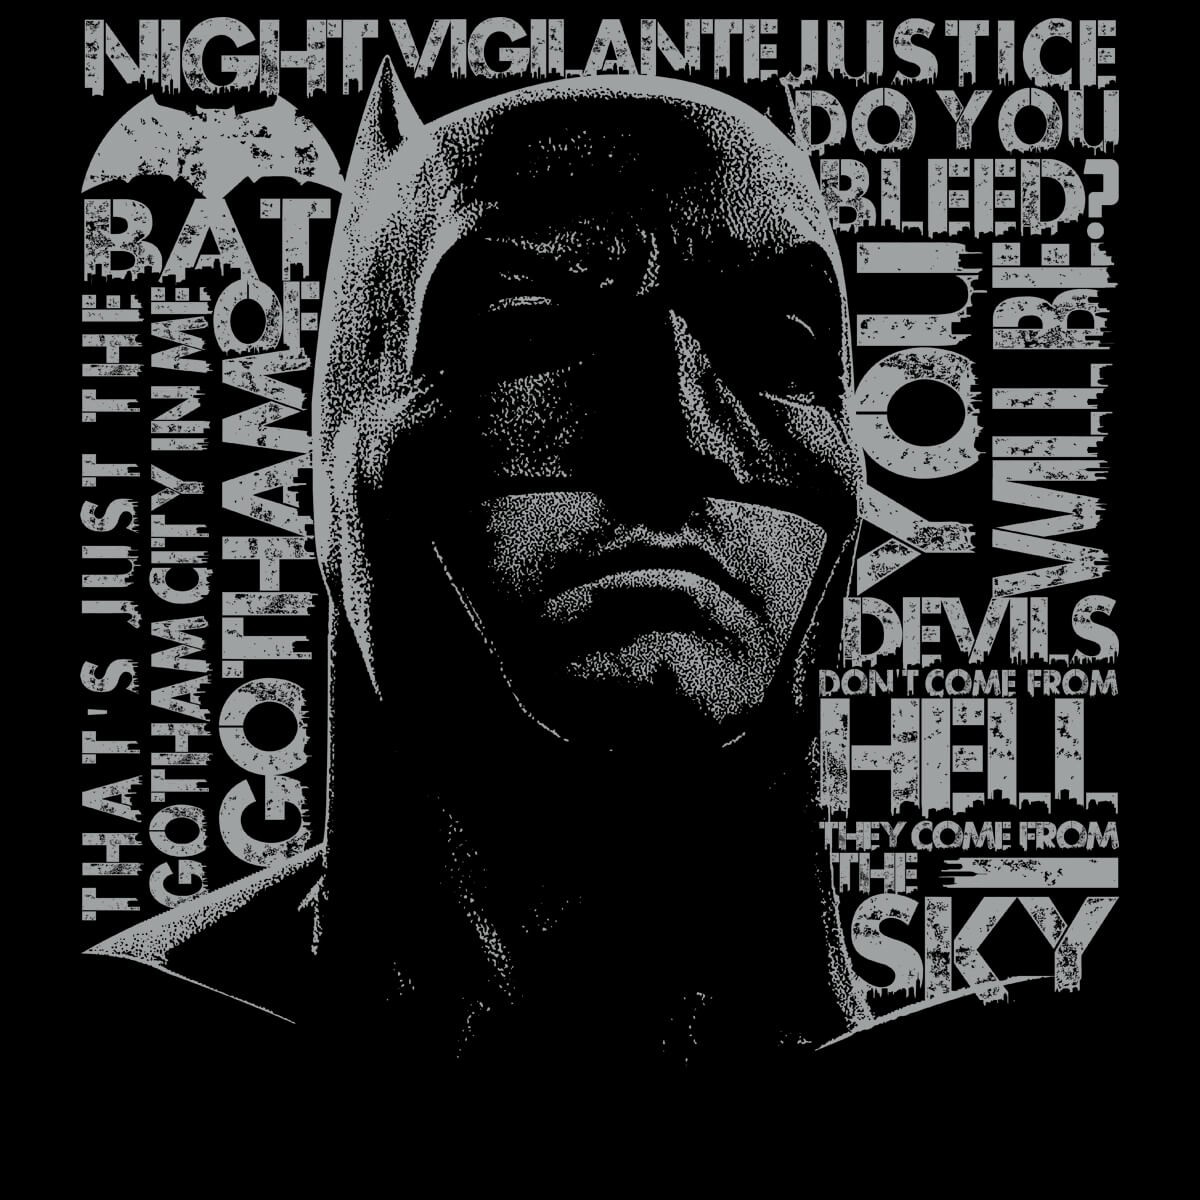 Today's T : 今日の「バットマンVスーパーマン」のクールなダークナイト Tシャツ - B-side of CIA